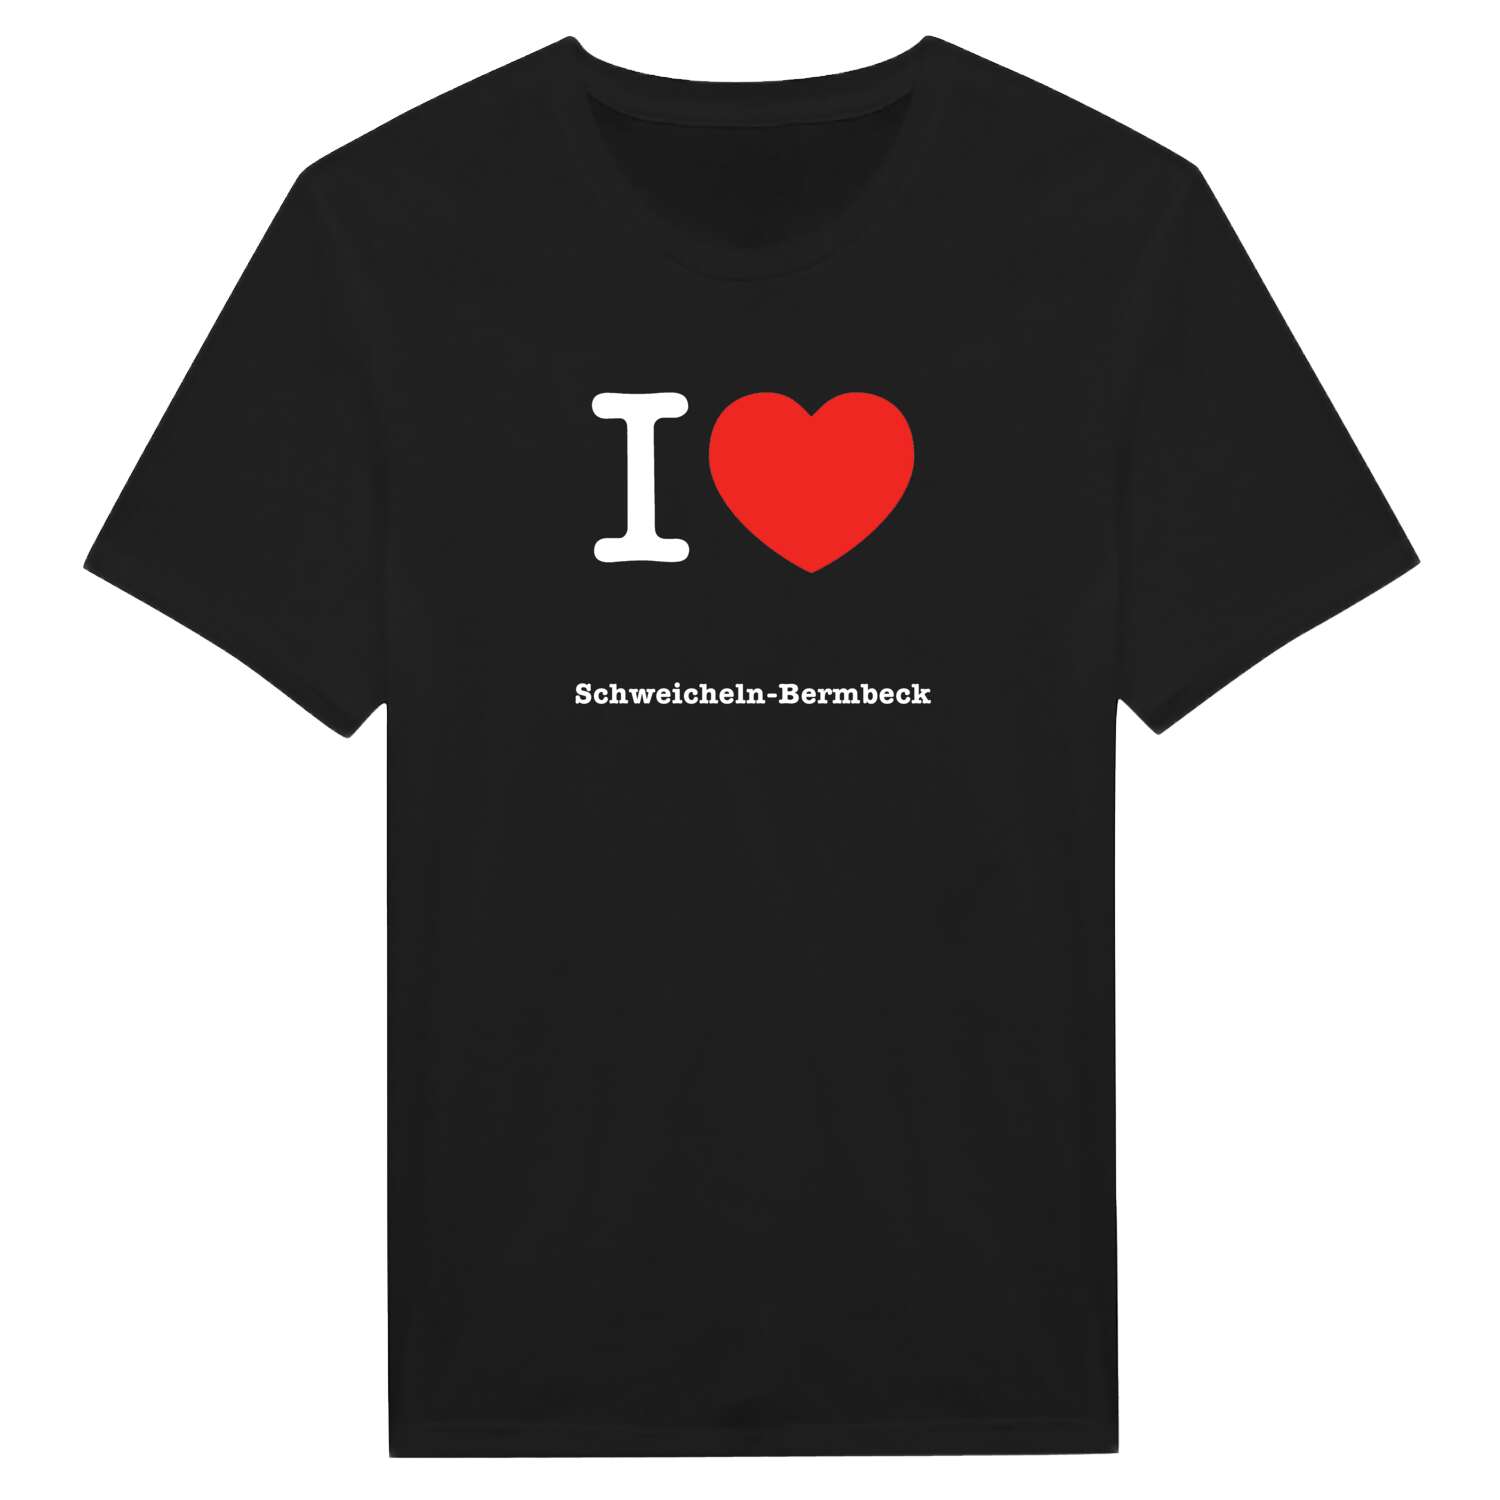 Schweicheln-Bermbeck T-Shirt »I love«